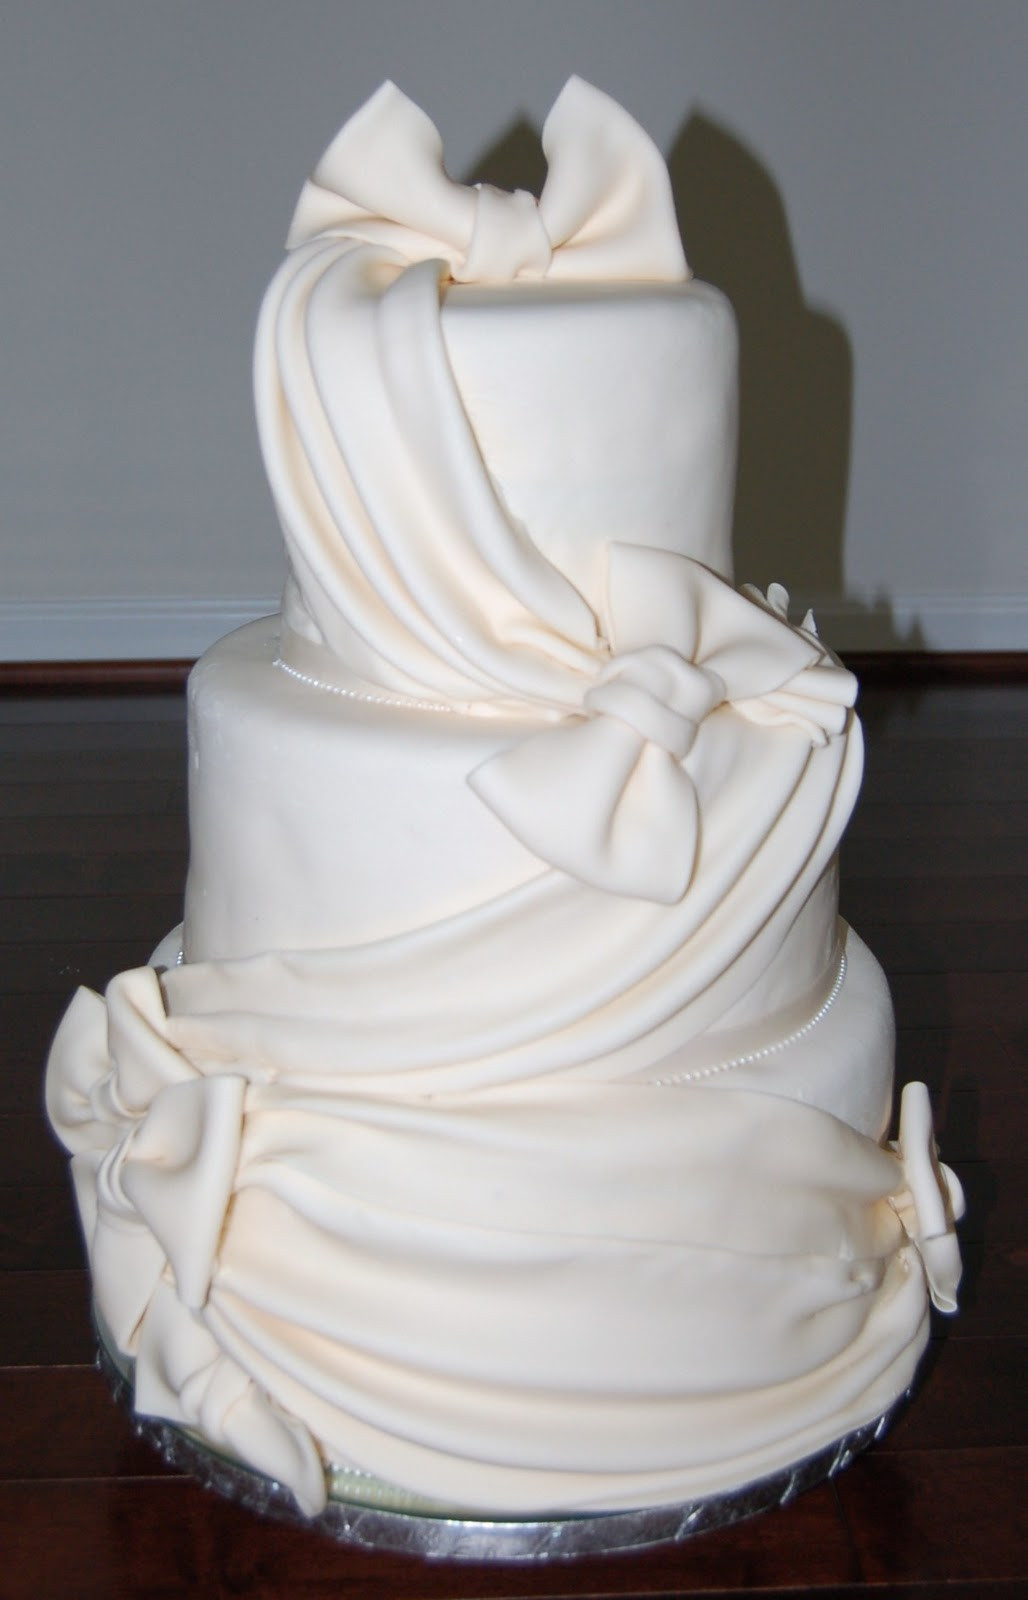 Wedding Cakes Decorated
 Cake Decorating Tips Chocolate 7 Layer Wedding Cake